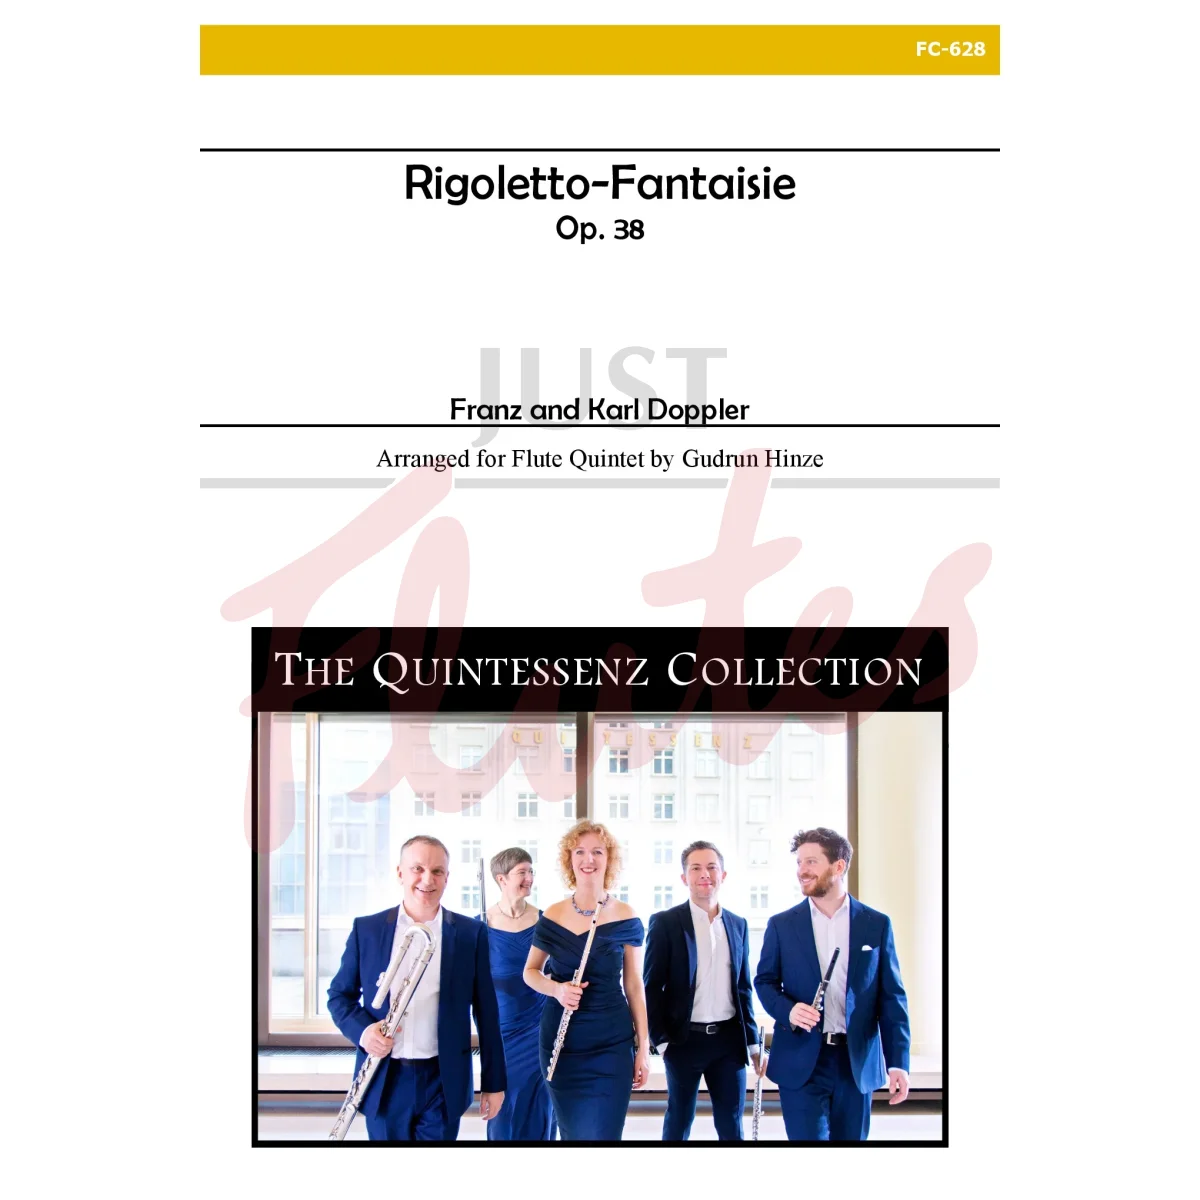 Rigoletto-Fantaisie for Flute Quintet